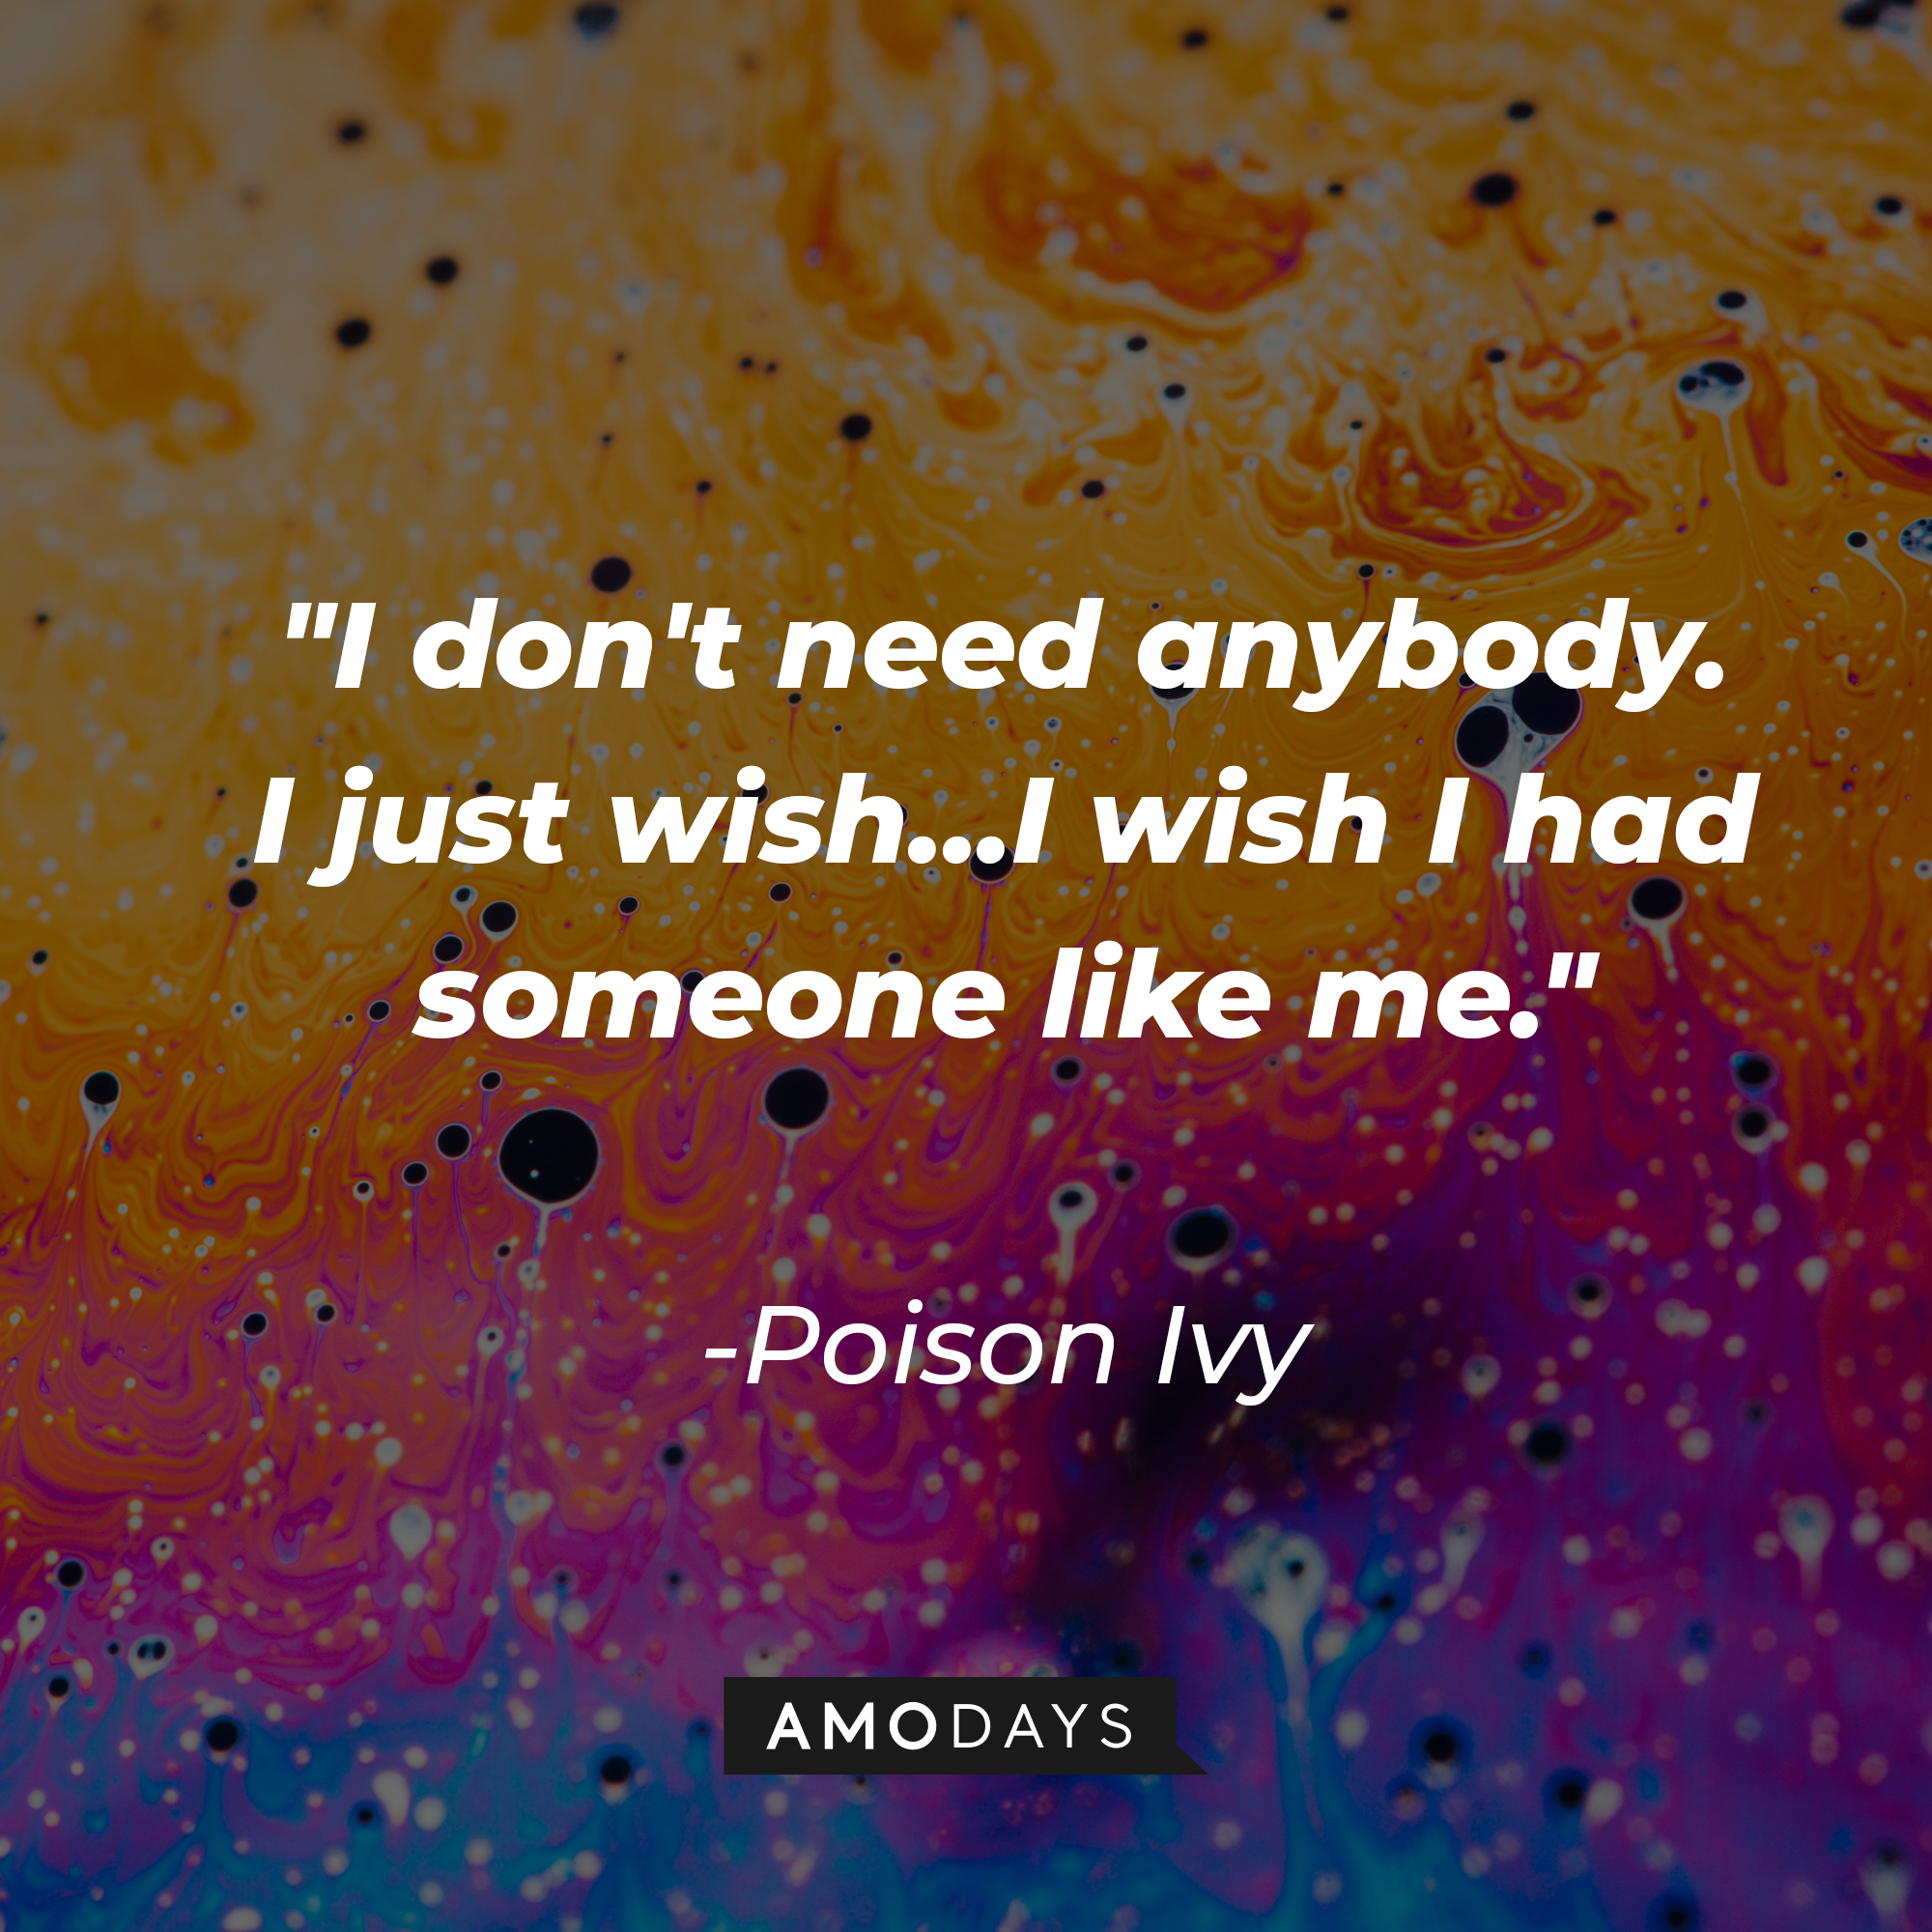 Poison Ivy’s quote: "I don't need anybody. I just wish...I wish I had someone like me." | Image: Unsplash